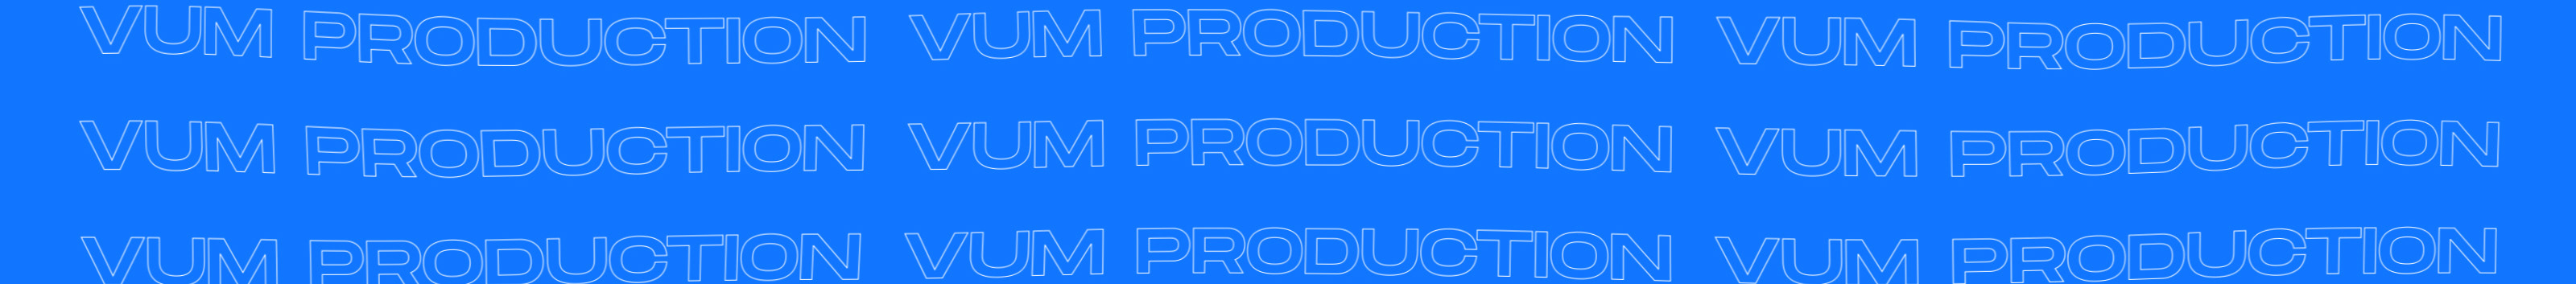 VUM Production's profile banner